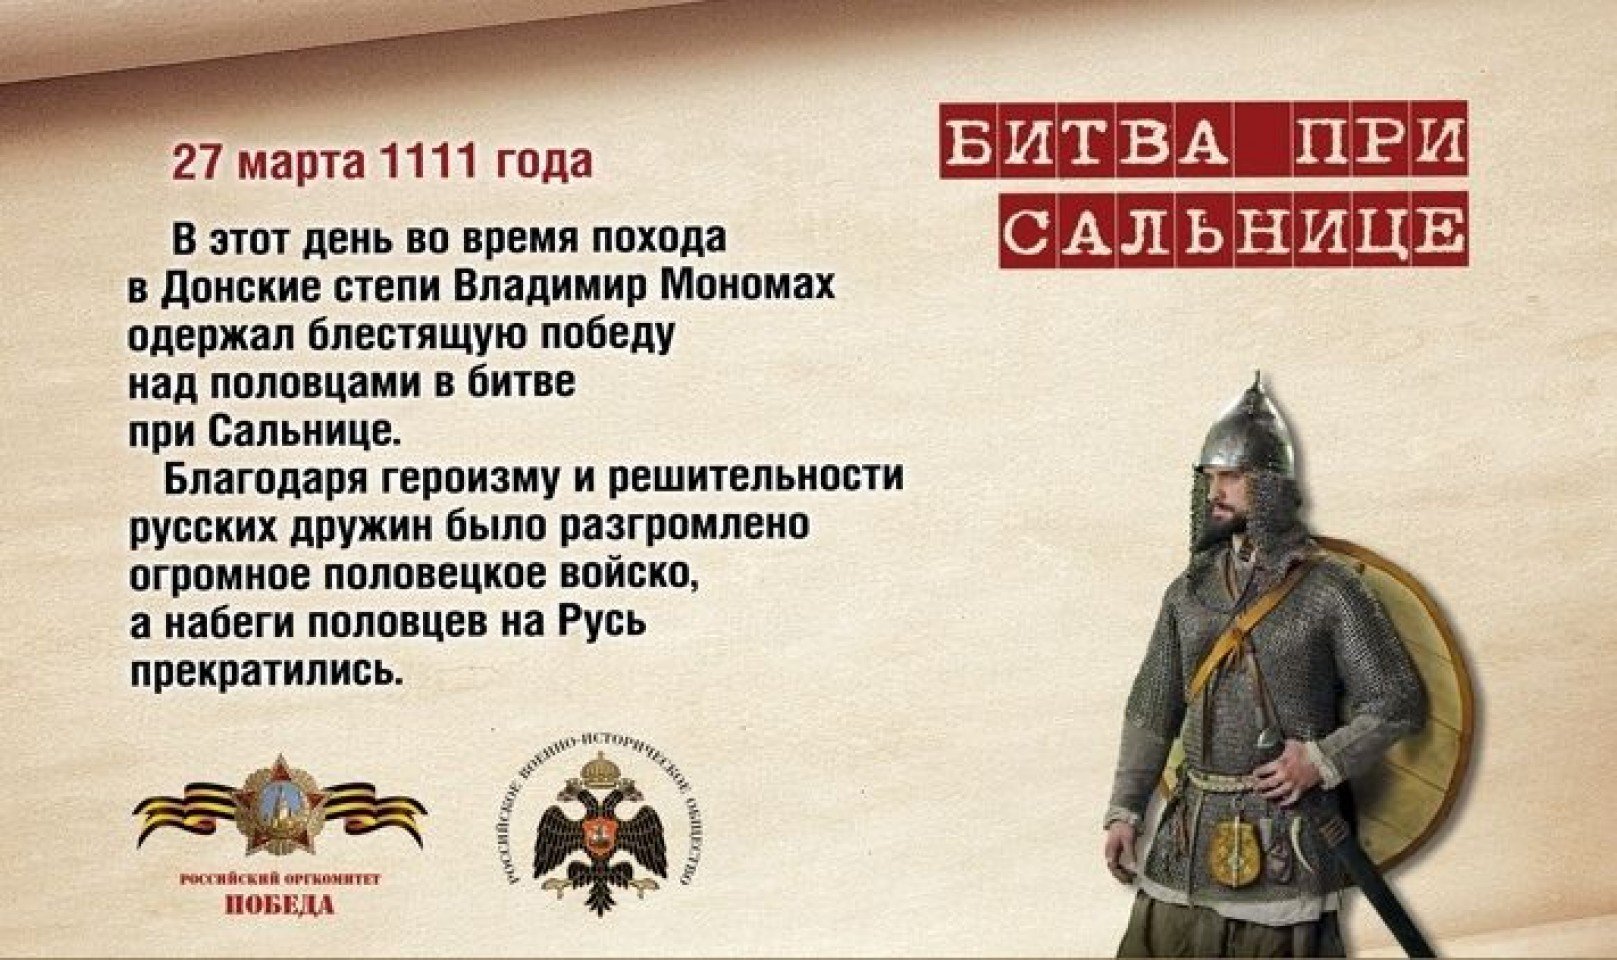 Знаменательный это какой. В этот день в 1111 году русские дружины разбили Половецкое войско..